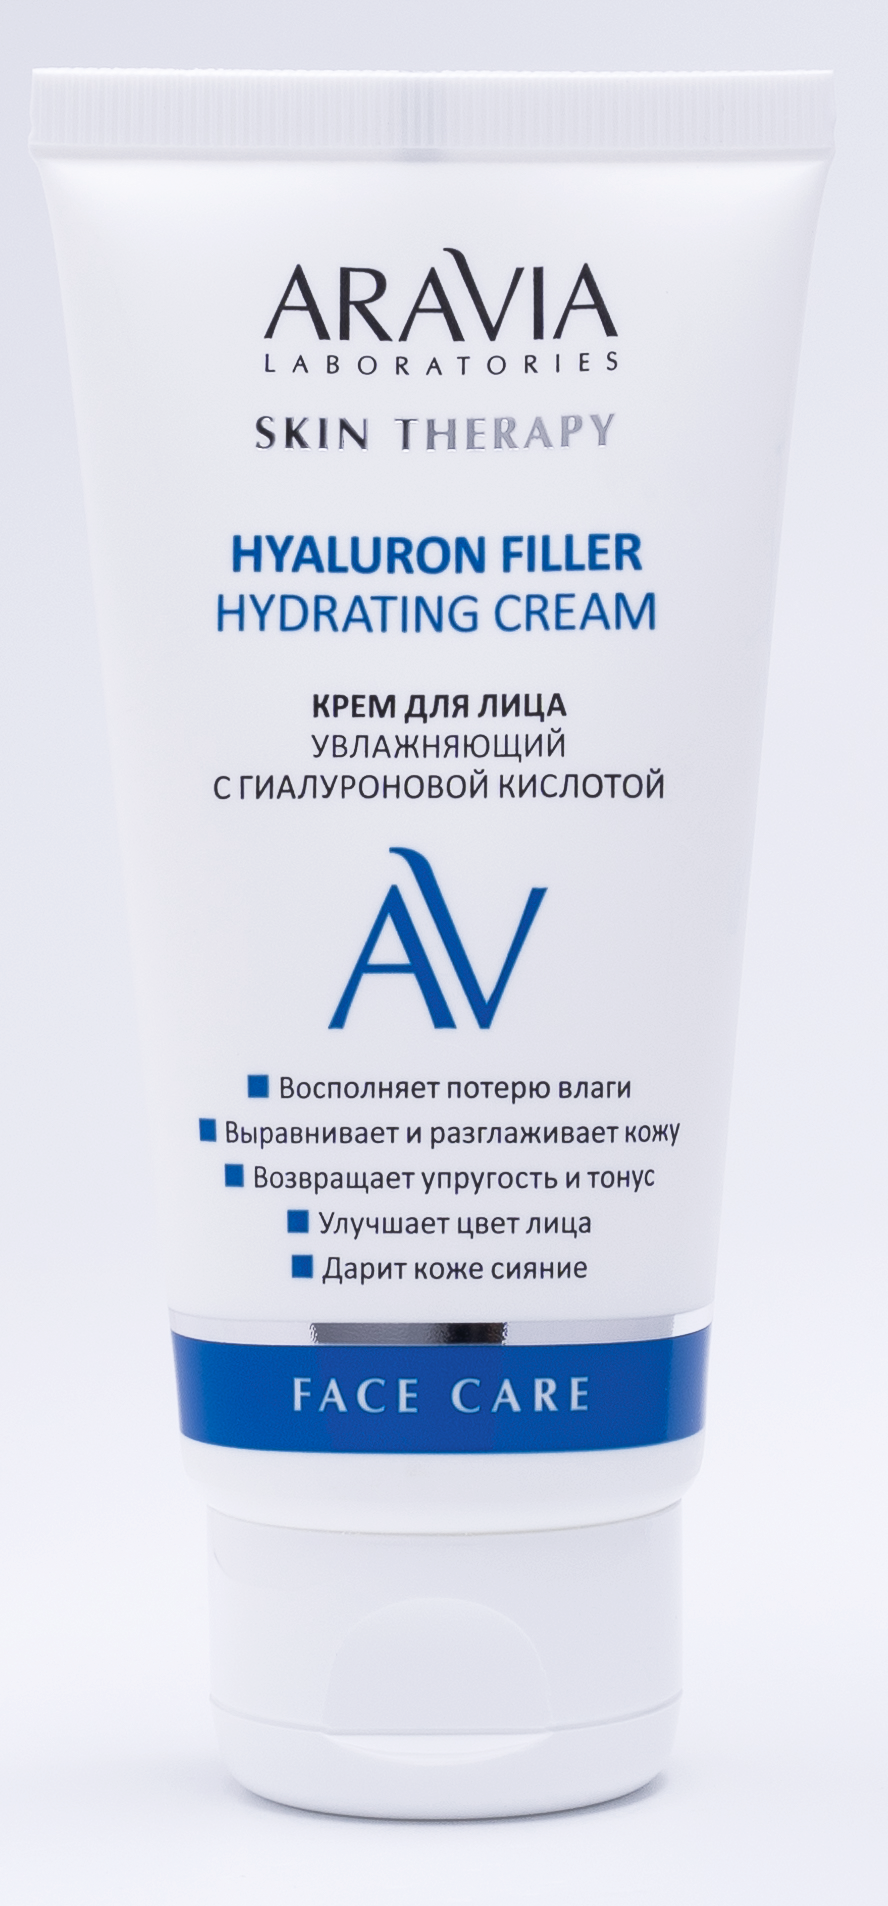 Крем для лица увлажняющий с гиалуроновой кислотой Hyaluron filler hydrating cream, Aravia laboratories